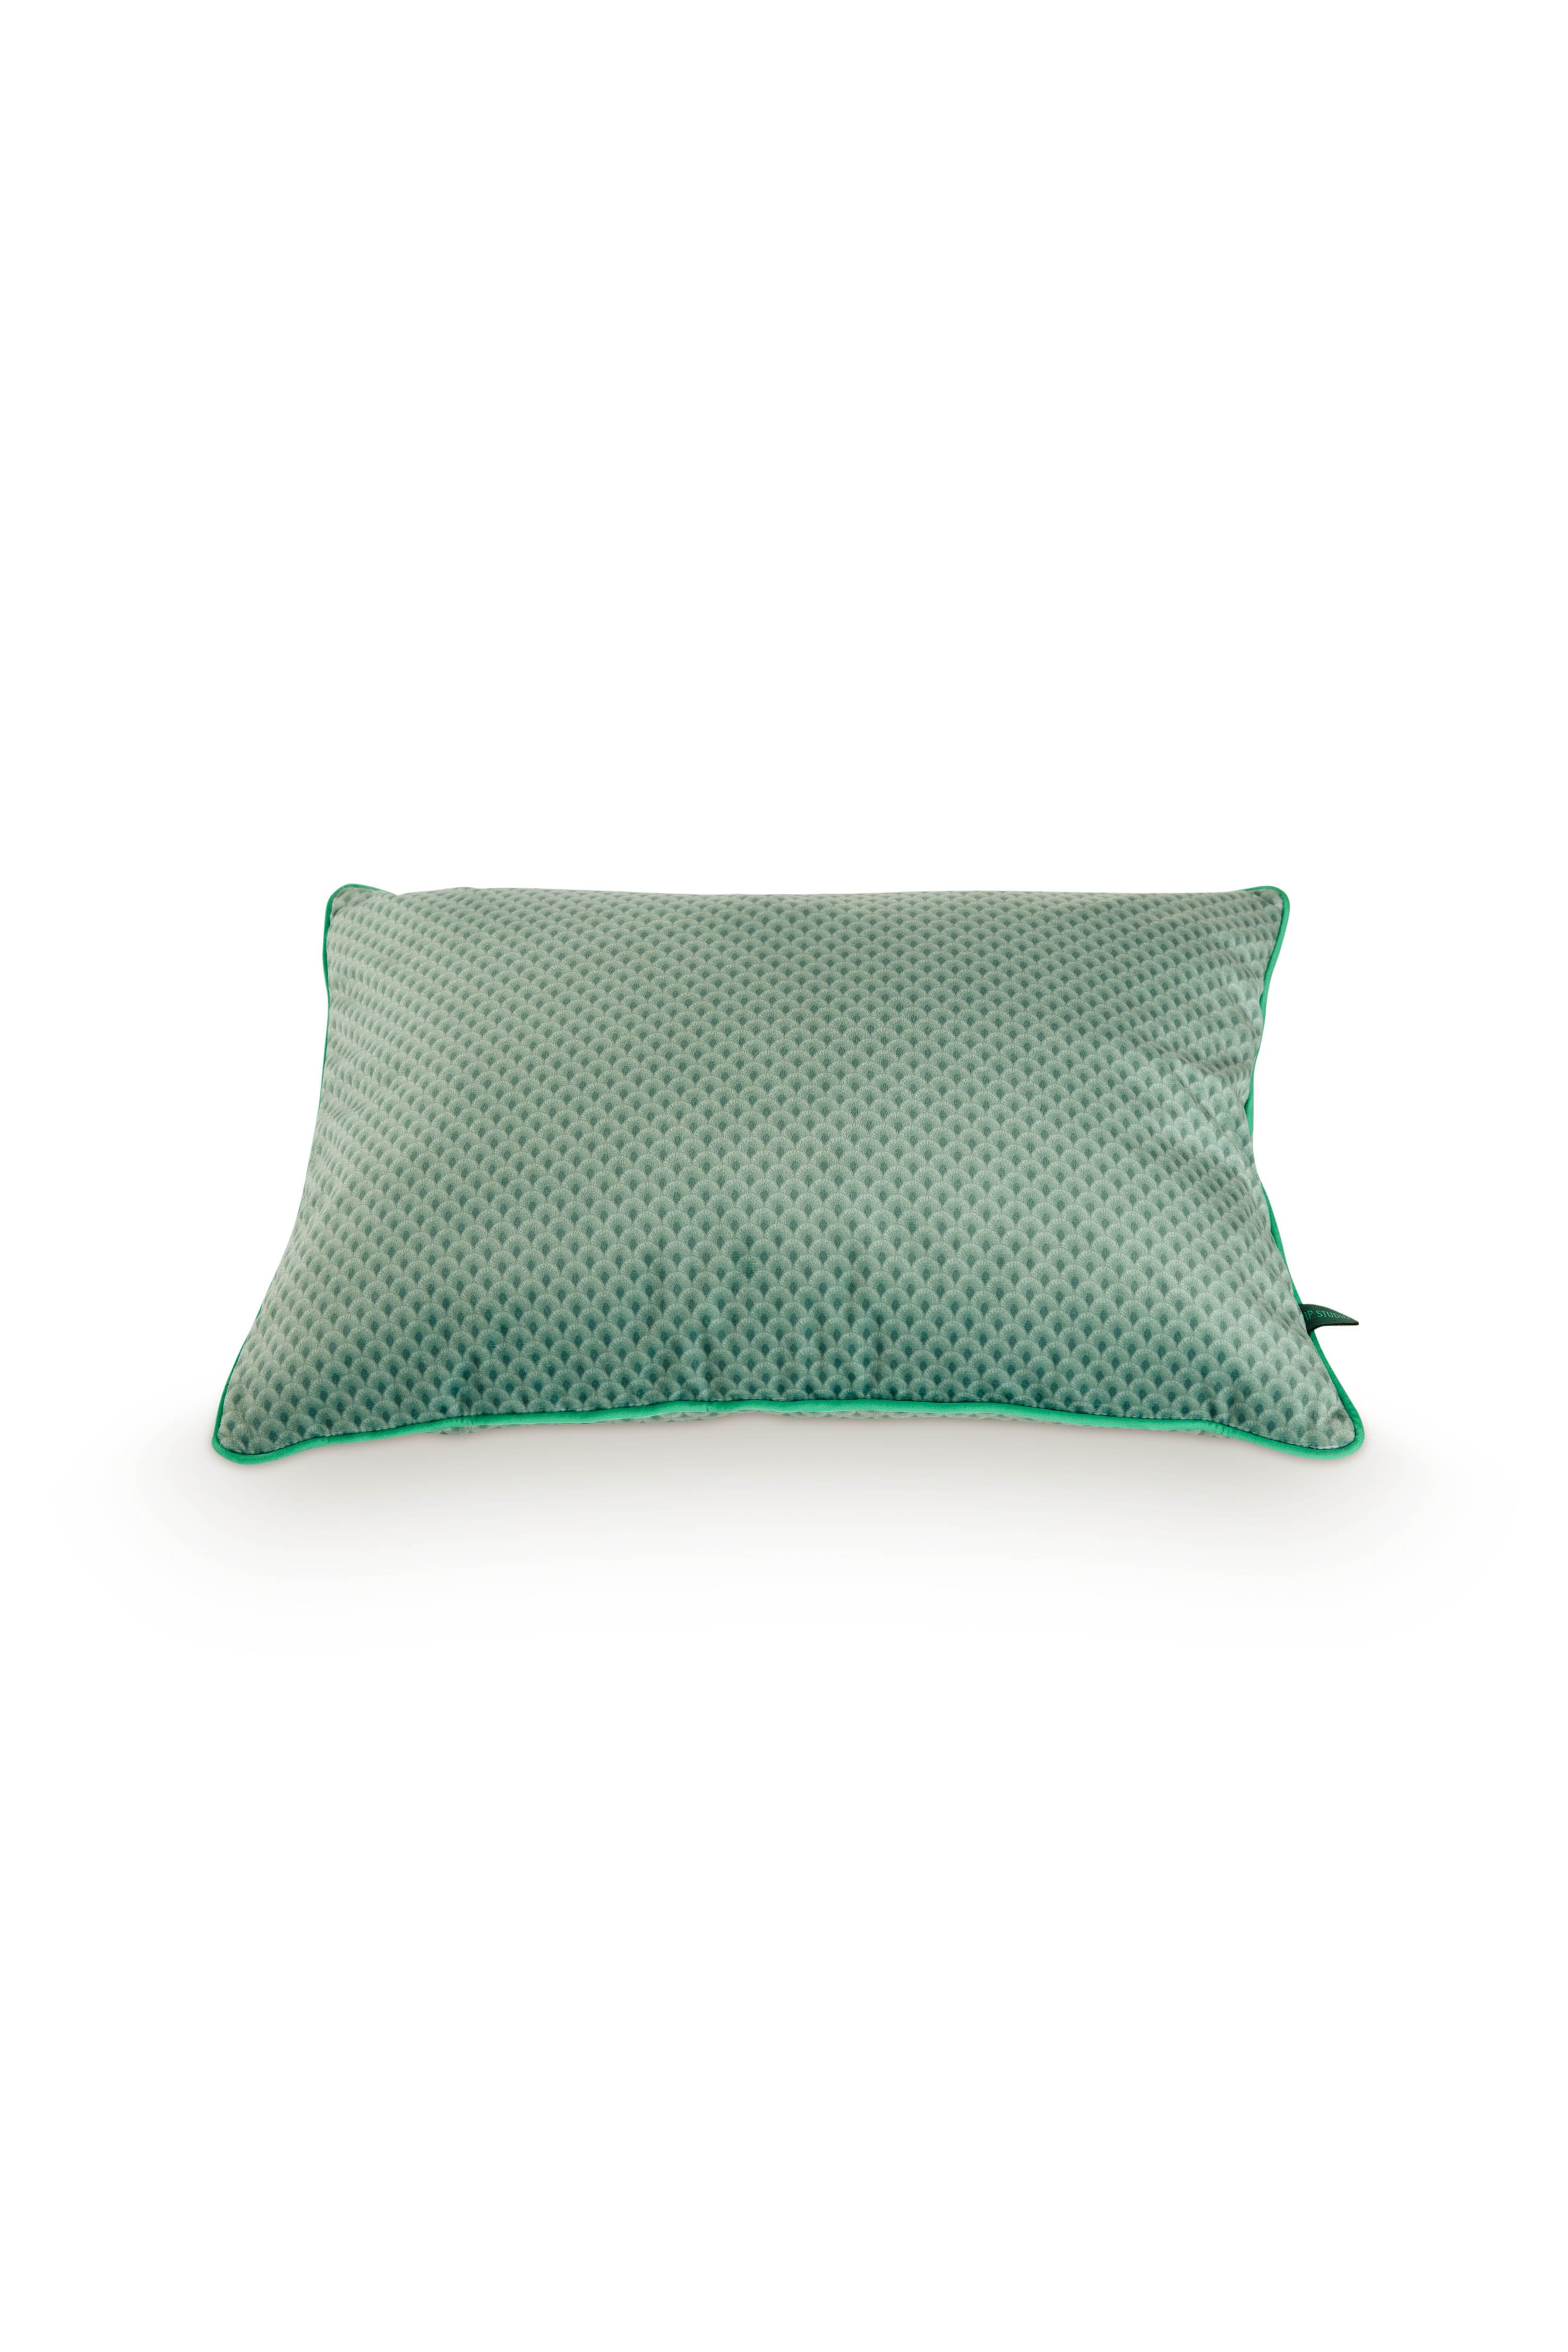 Cushion Suki Green 50x35cm Gift